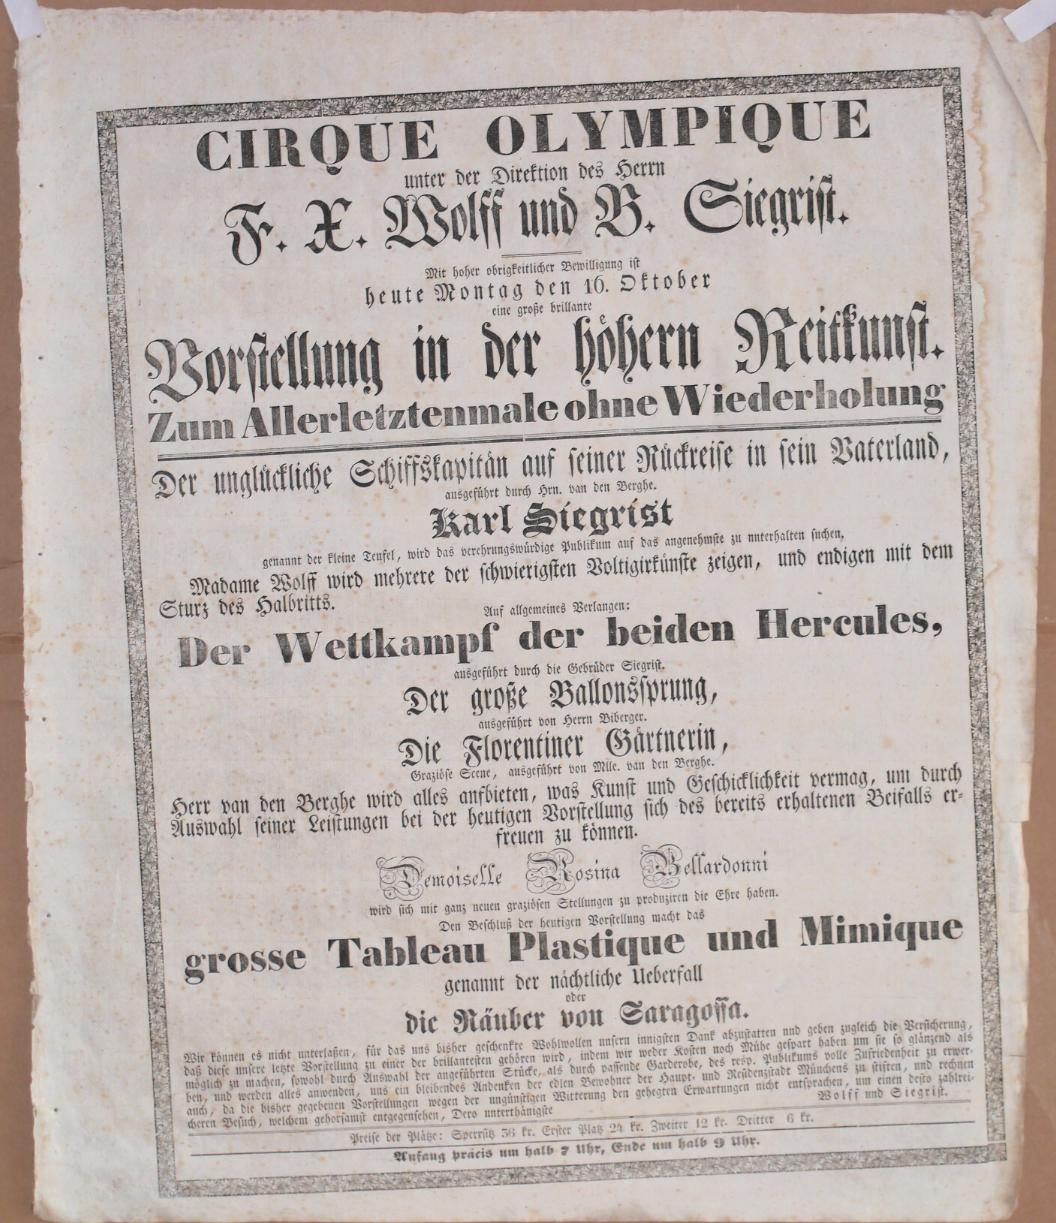  - Cirque Olympique unter der Direktion des Herrn F. X. Wolff und B. Siegrist. Vorstellung in der hhern Reitkunst..